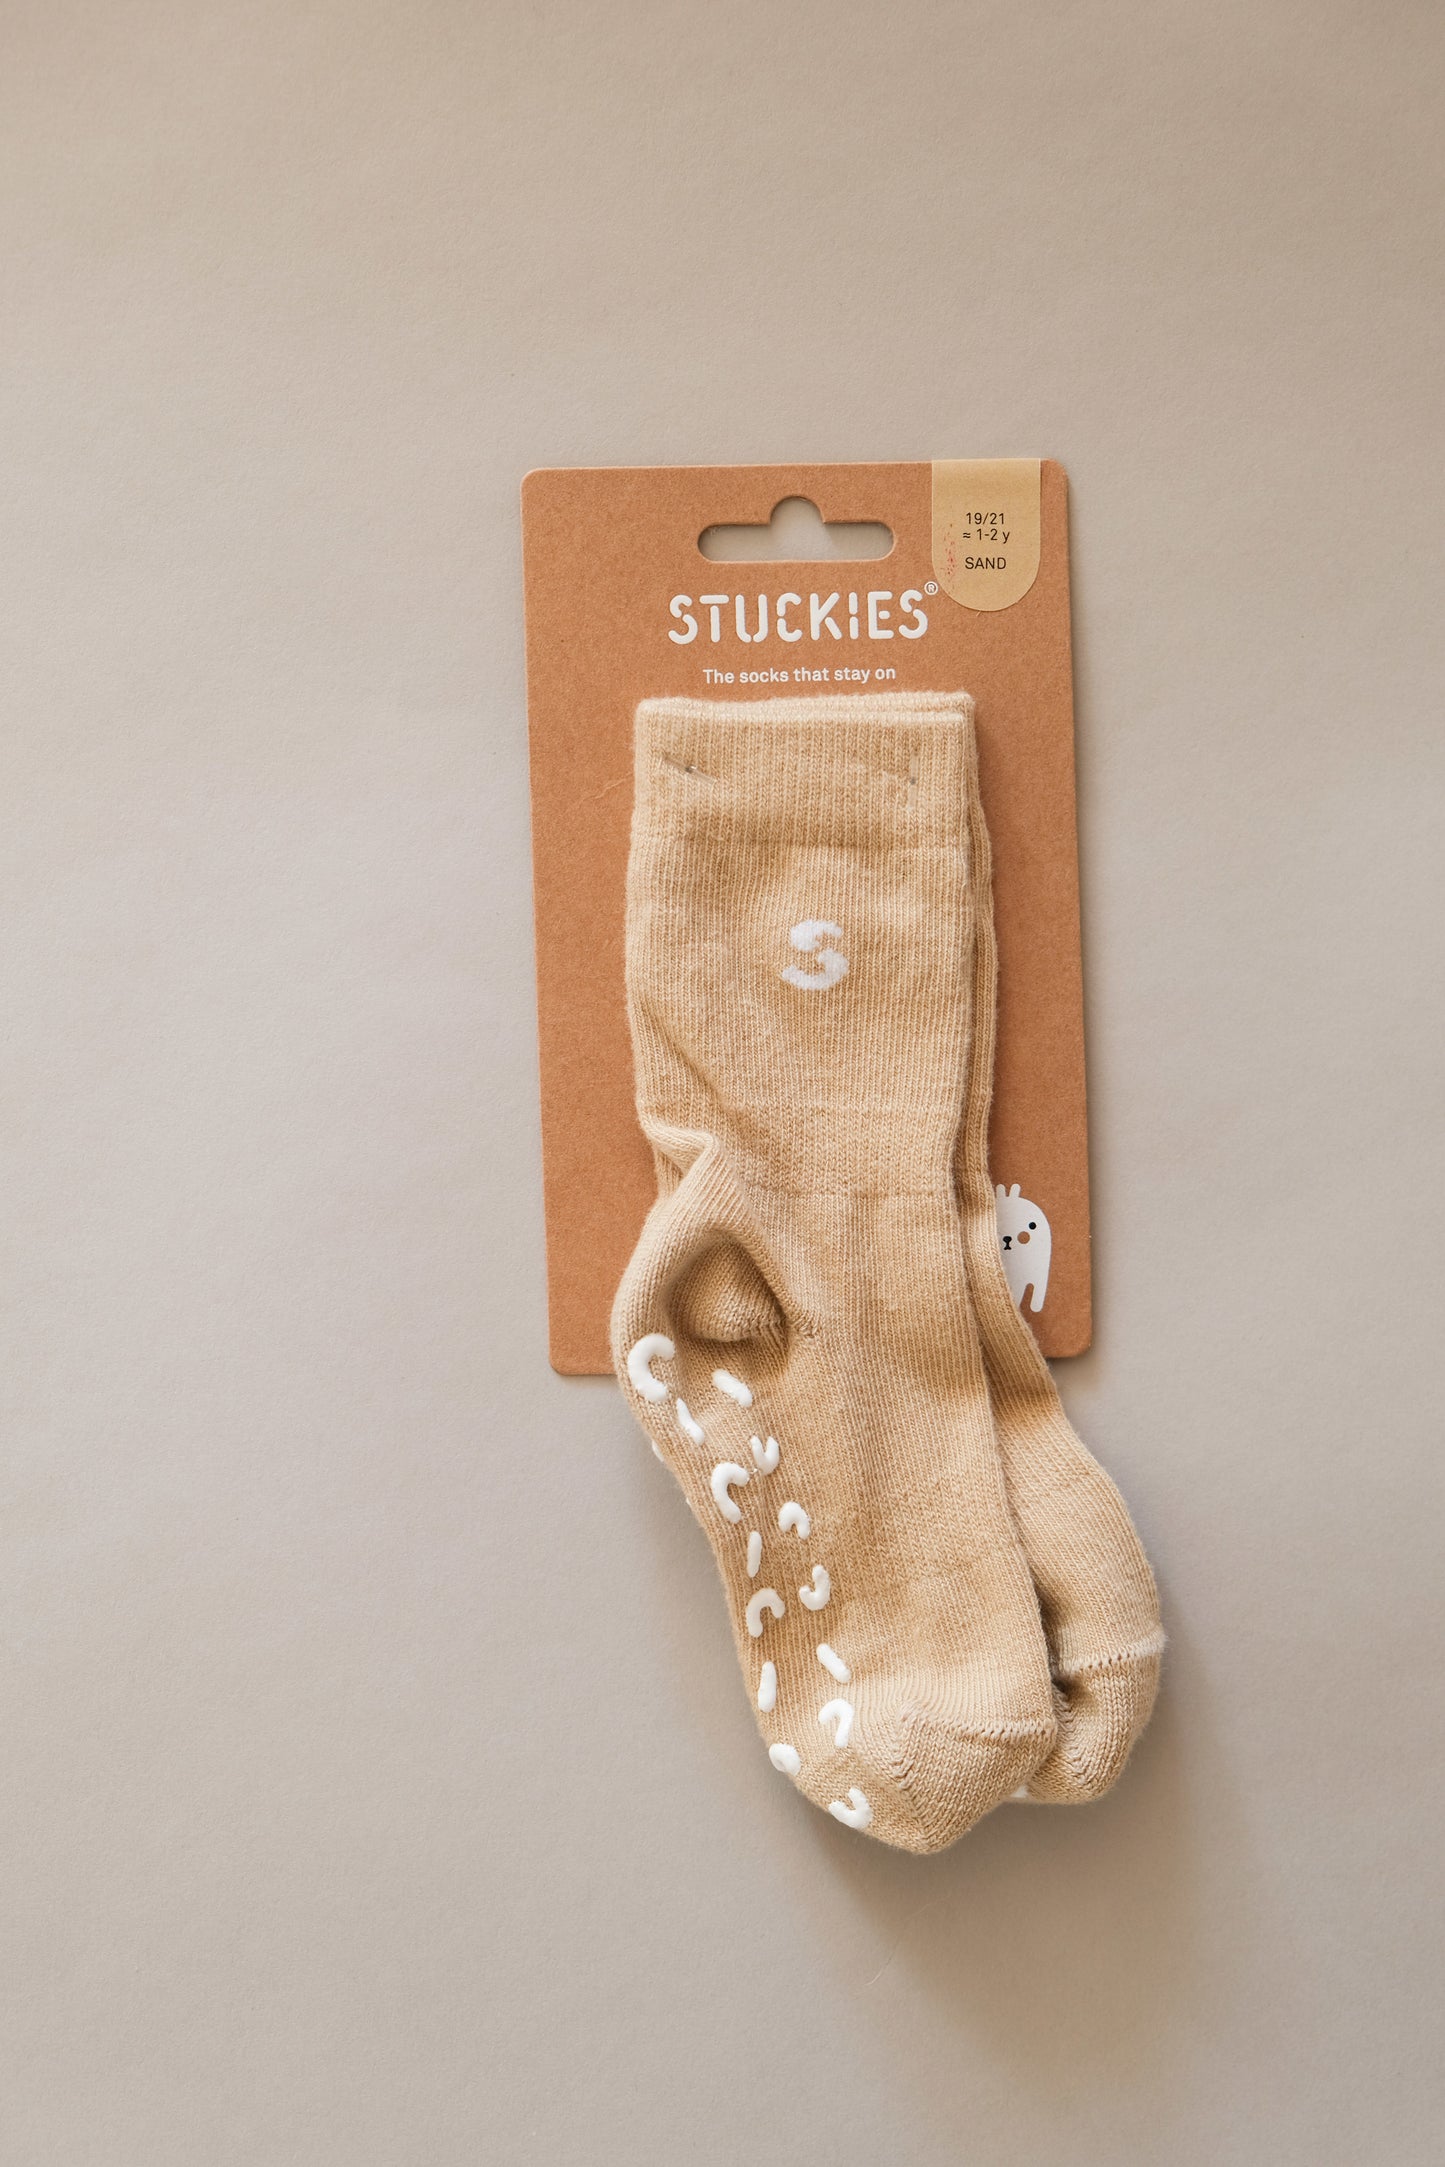 Stuckies Socks Single (sand)